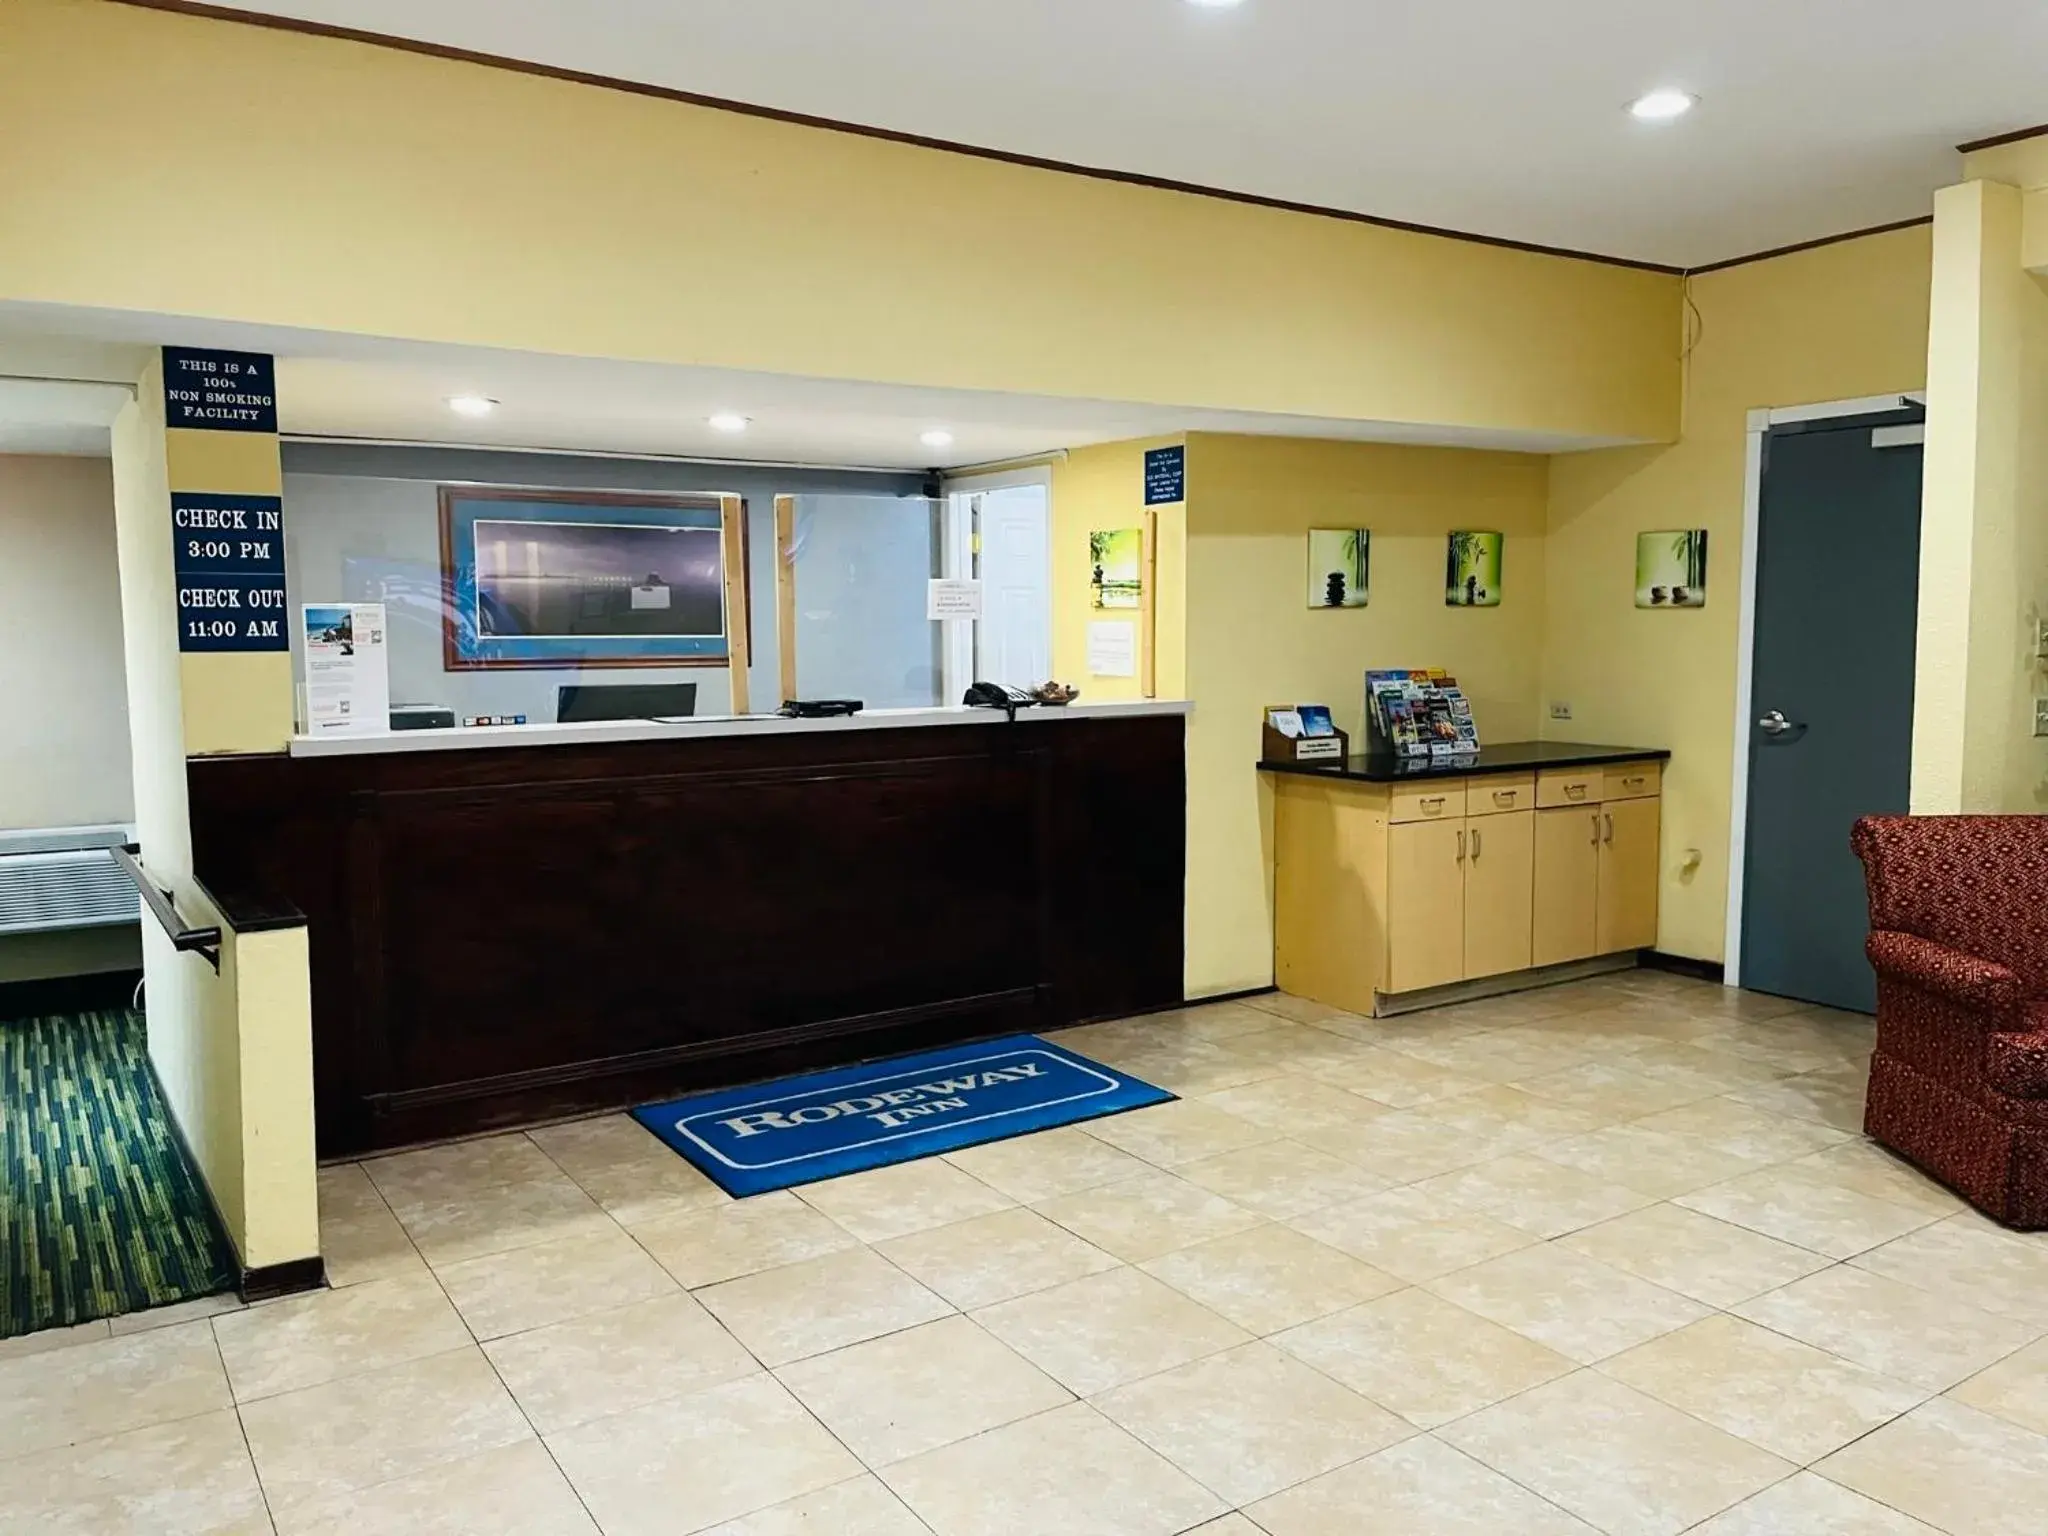 Lobby or reception, Lobby/Reception in Rodeway Inn